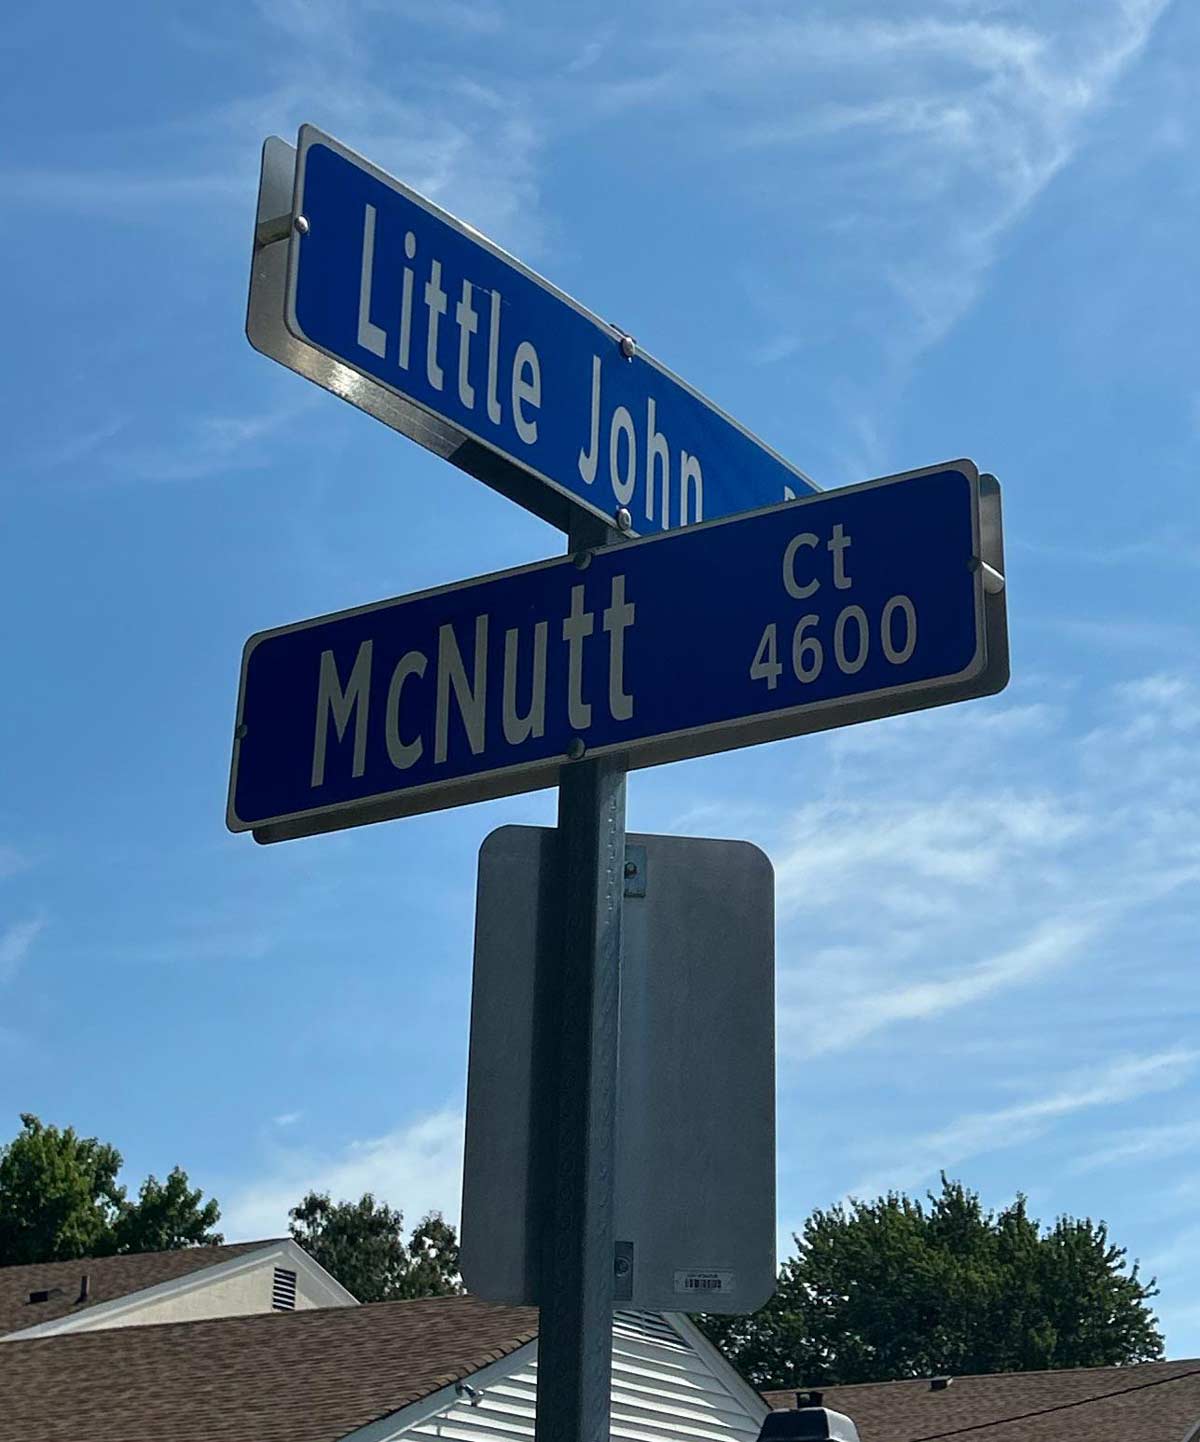 Just take Little John to McNutt